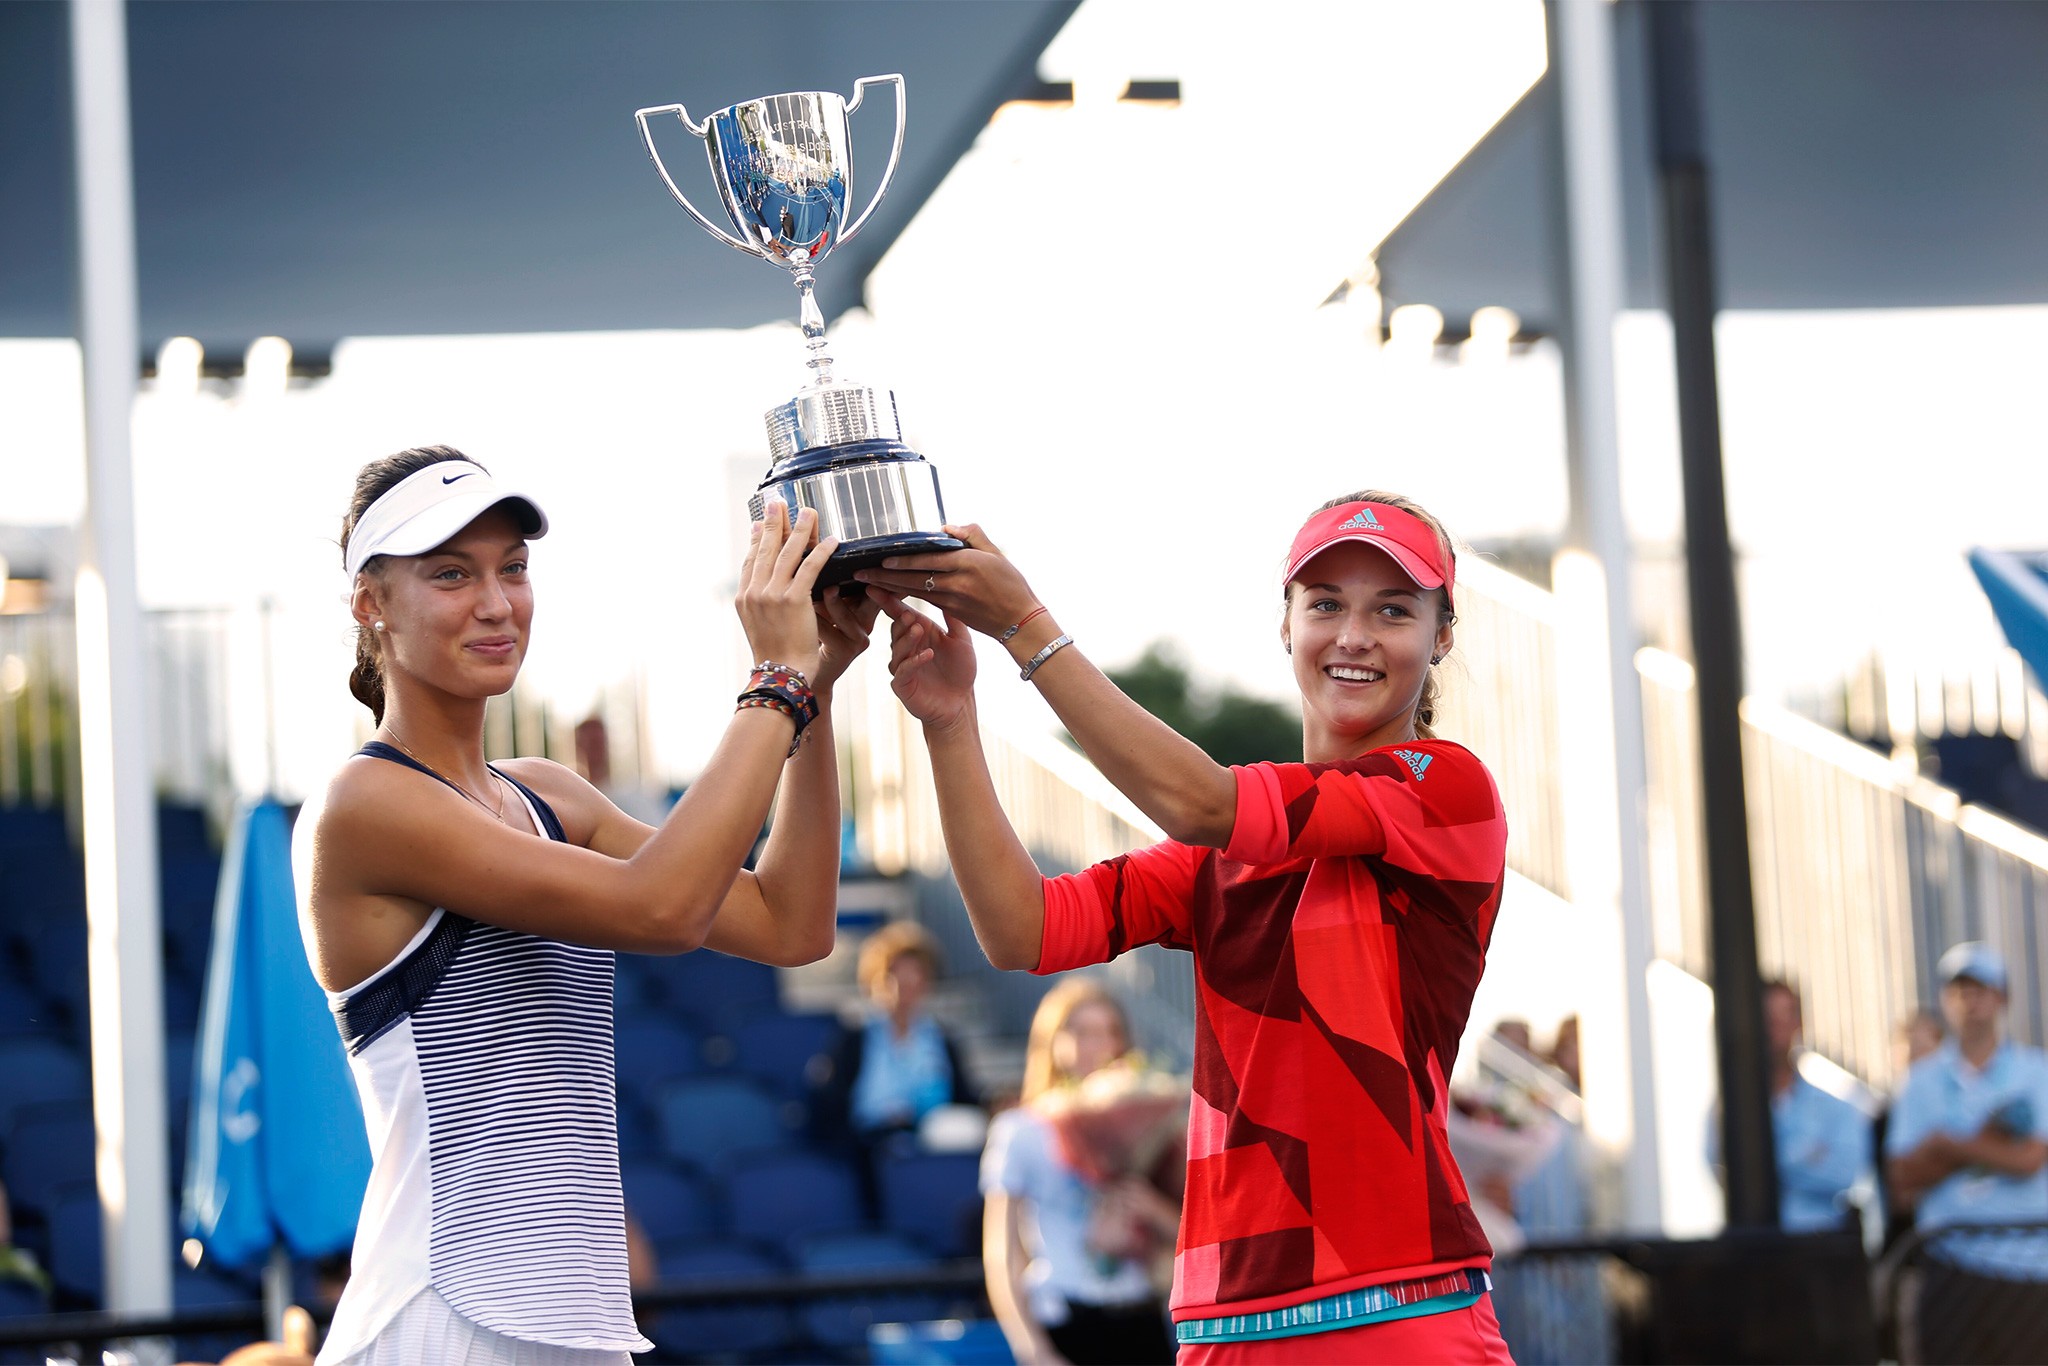 People 2048x1366 Anna Kalinskaya tennis Tereza Mihalikova women cup smiling standing two women tennis player athletes